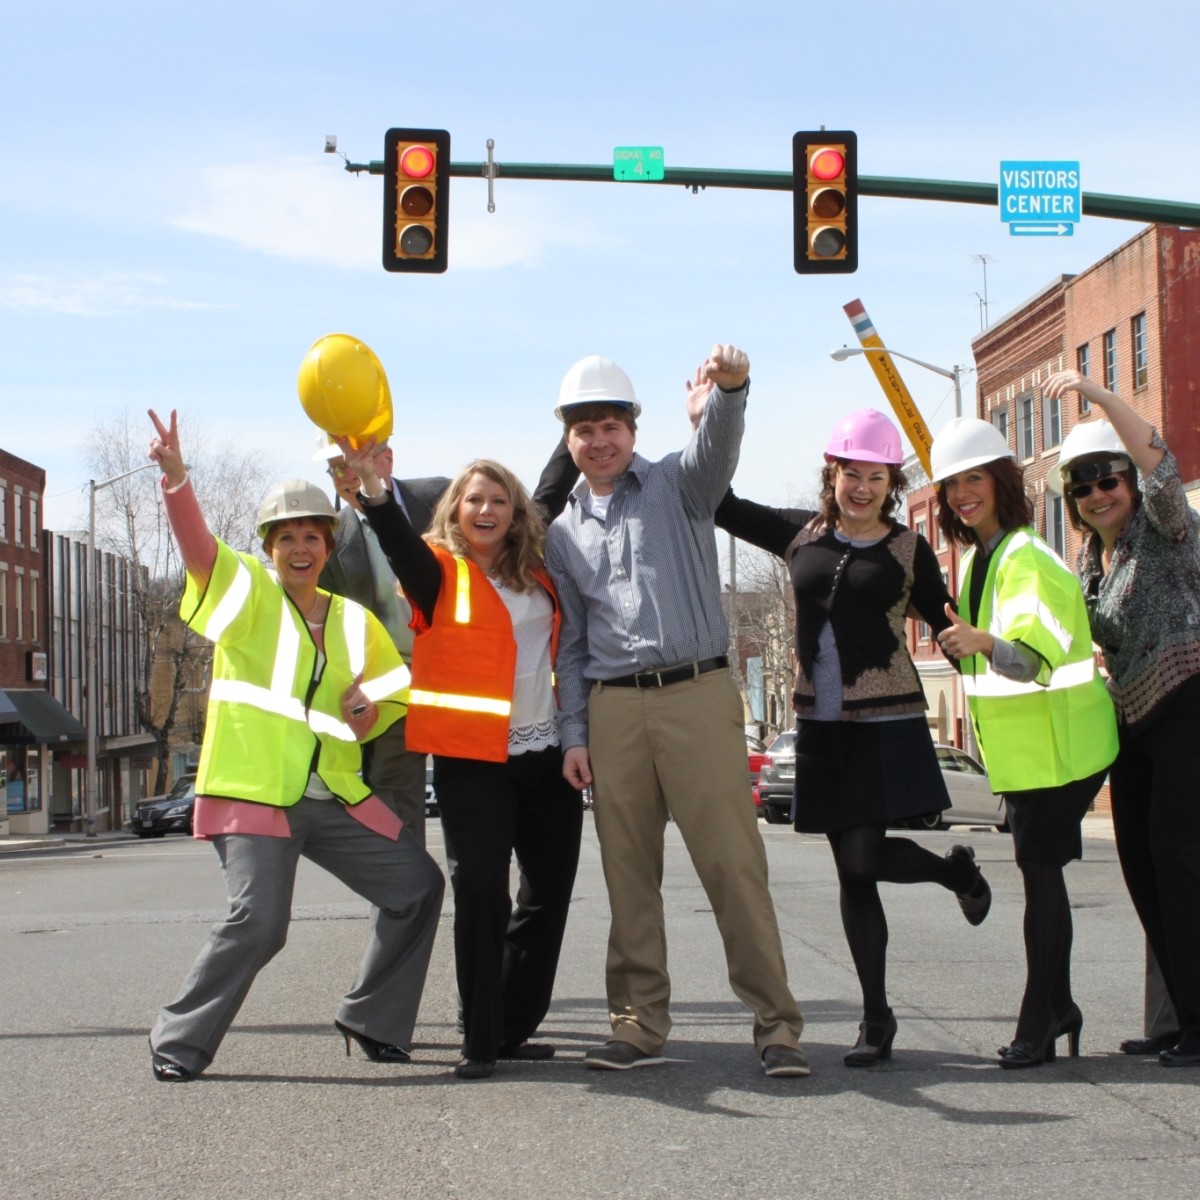 Un pequeño grupo de personas ataviadas con chalecos de alta visibilidad y cascos celebran en medio de un cruce el inicio de un proyecto de mejora del paisaje urbano.